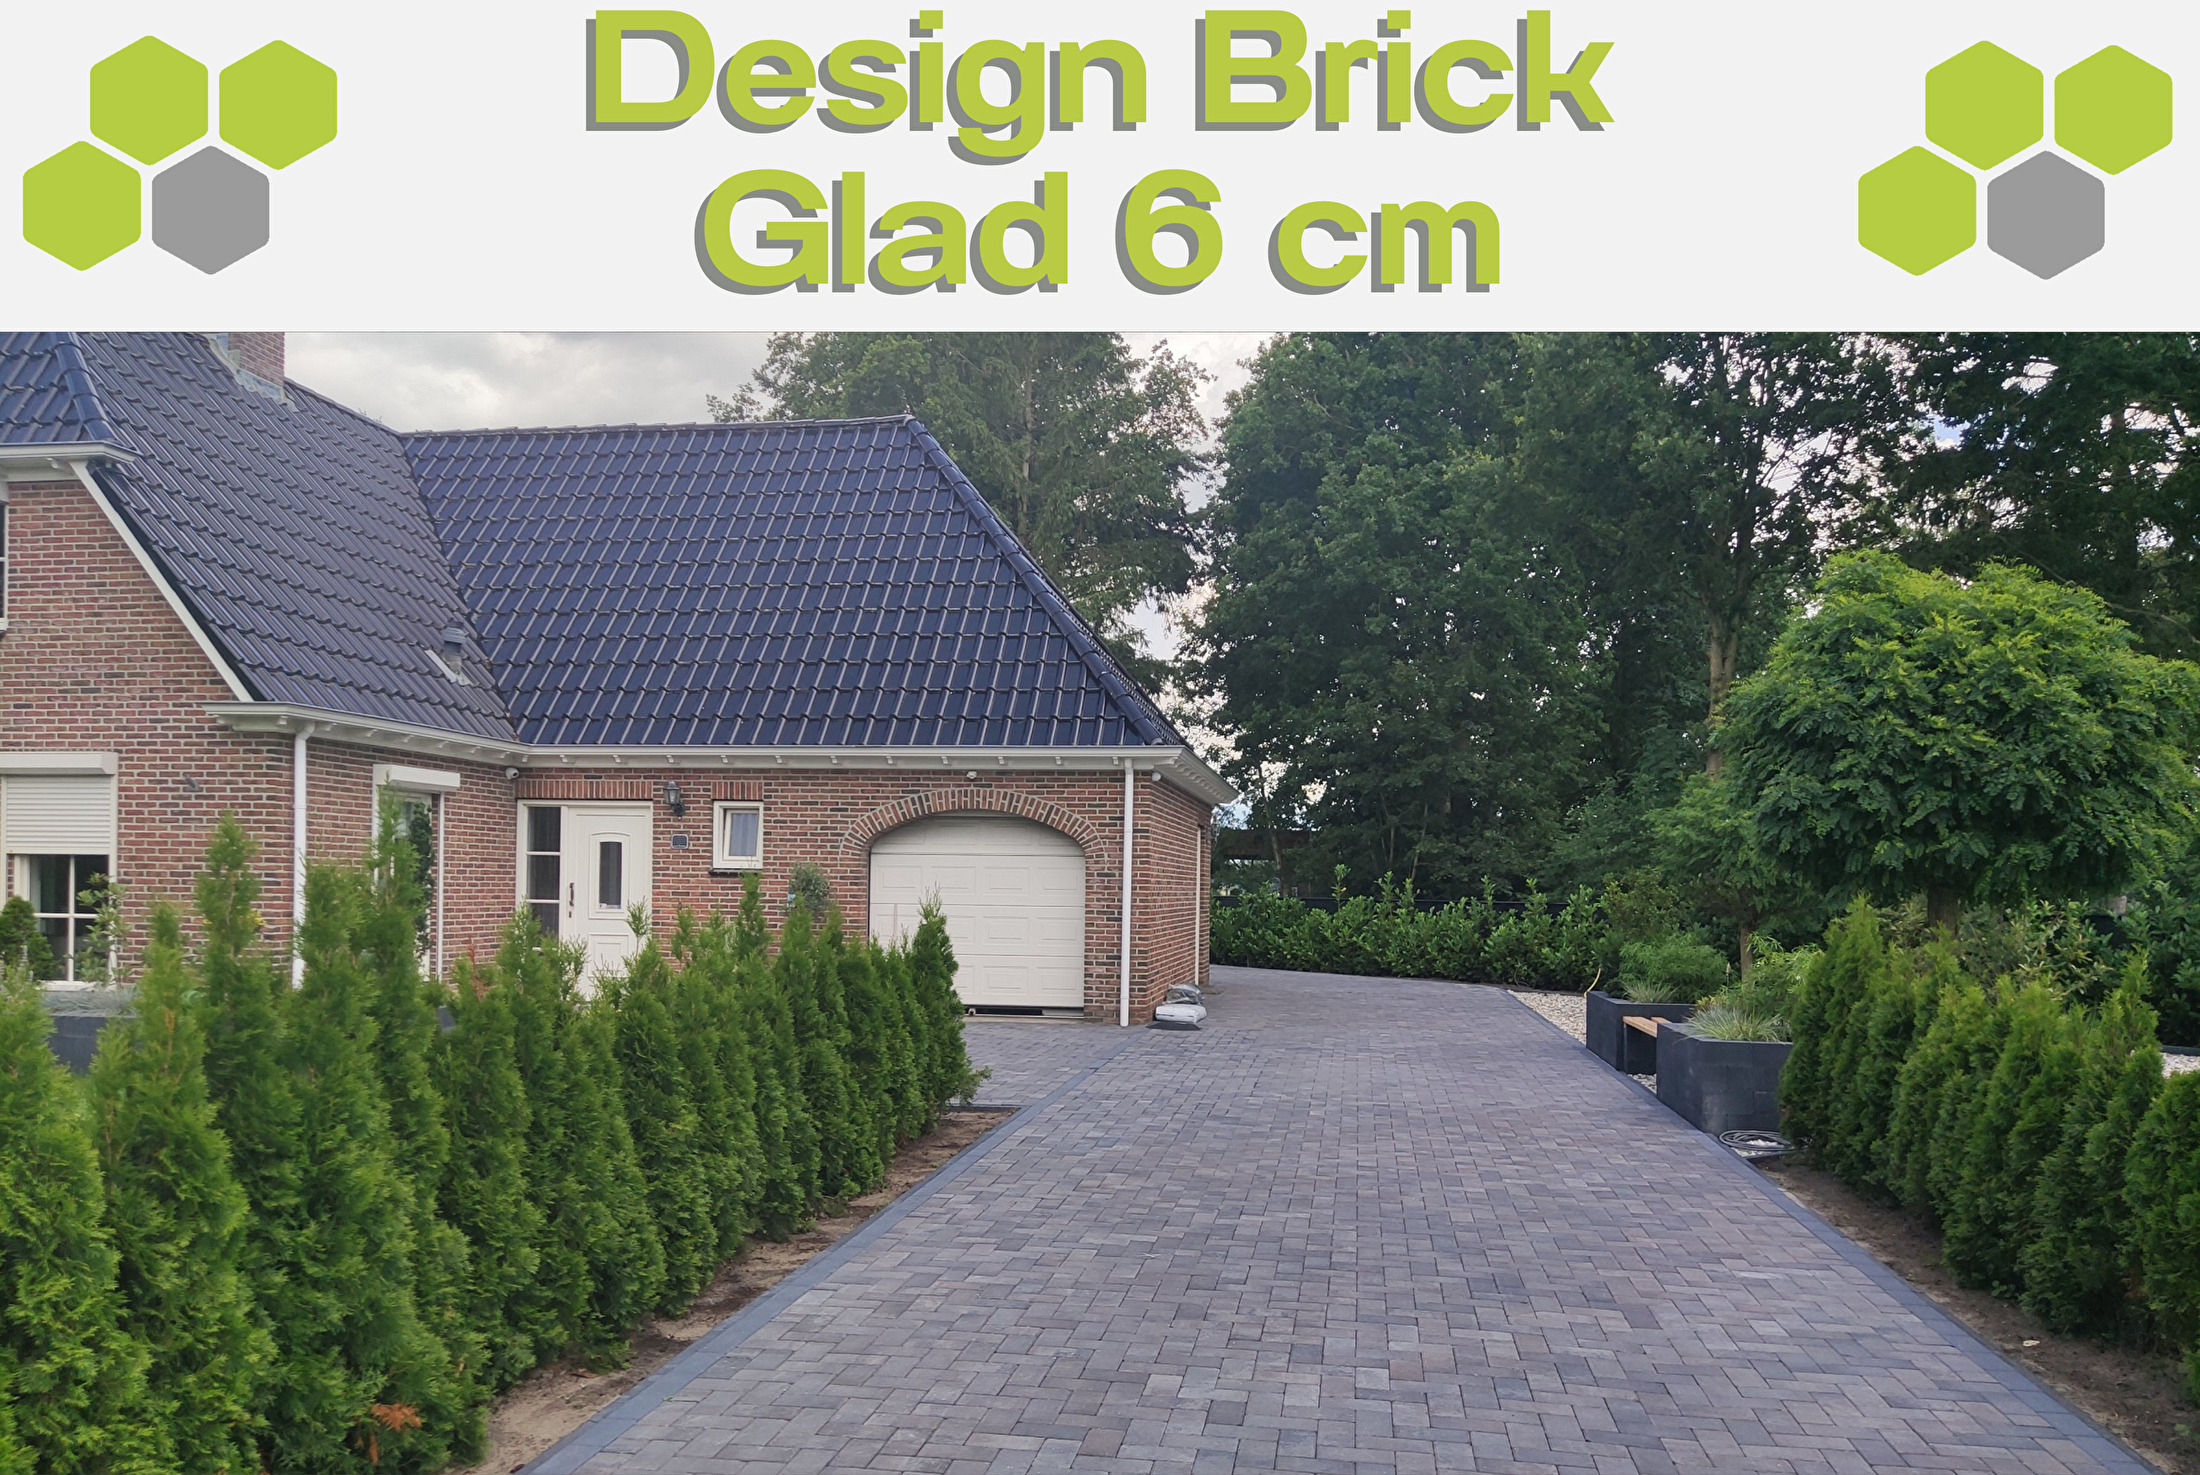 Design Brick Glad 6 cm